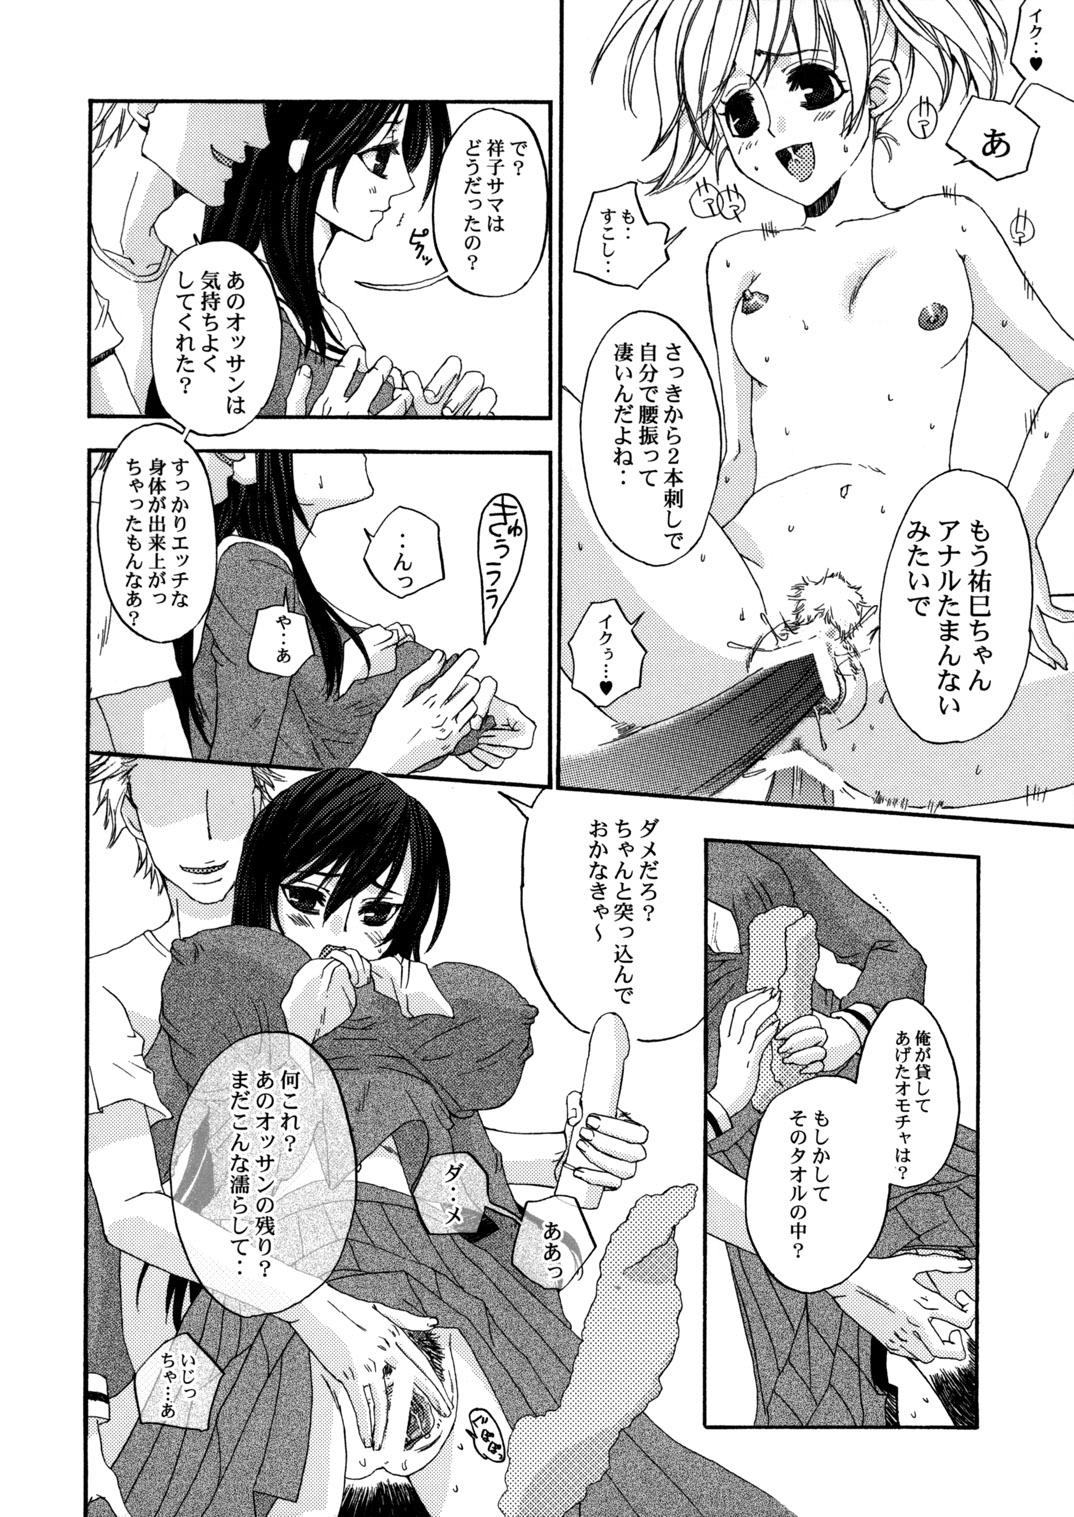 Punish Himitsu no Hanazono 3 | Secret the garden of a flower 3 - Maria-sama ga miteru Dick Sucking - Page 5